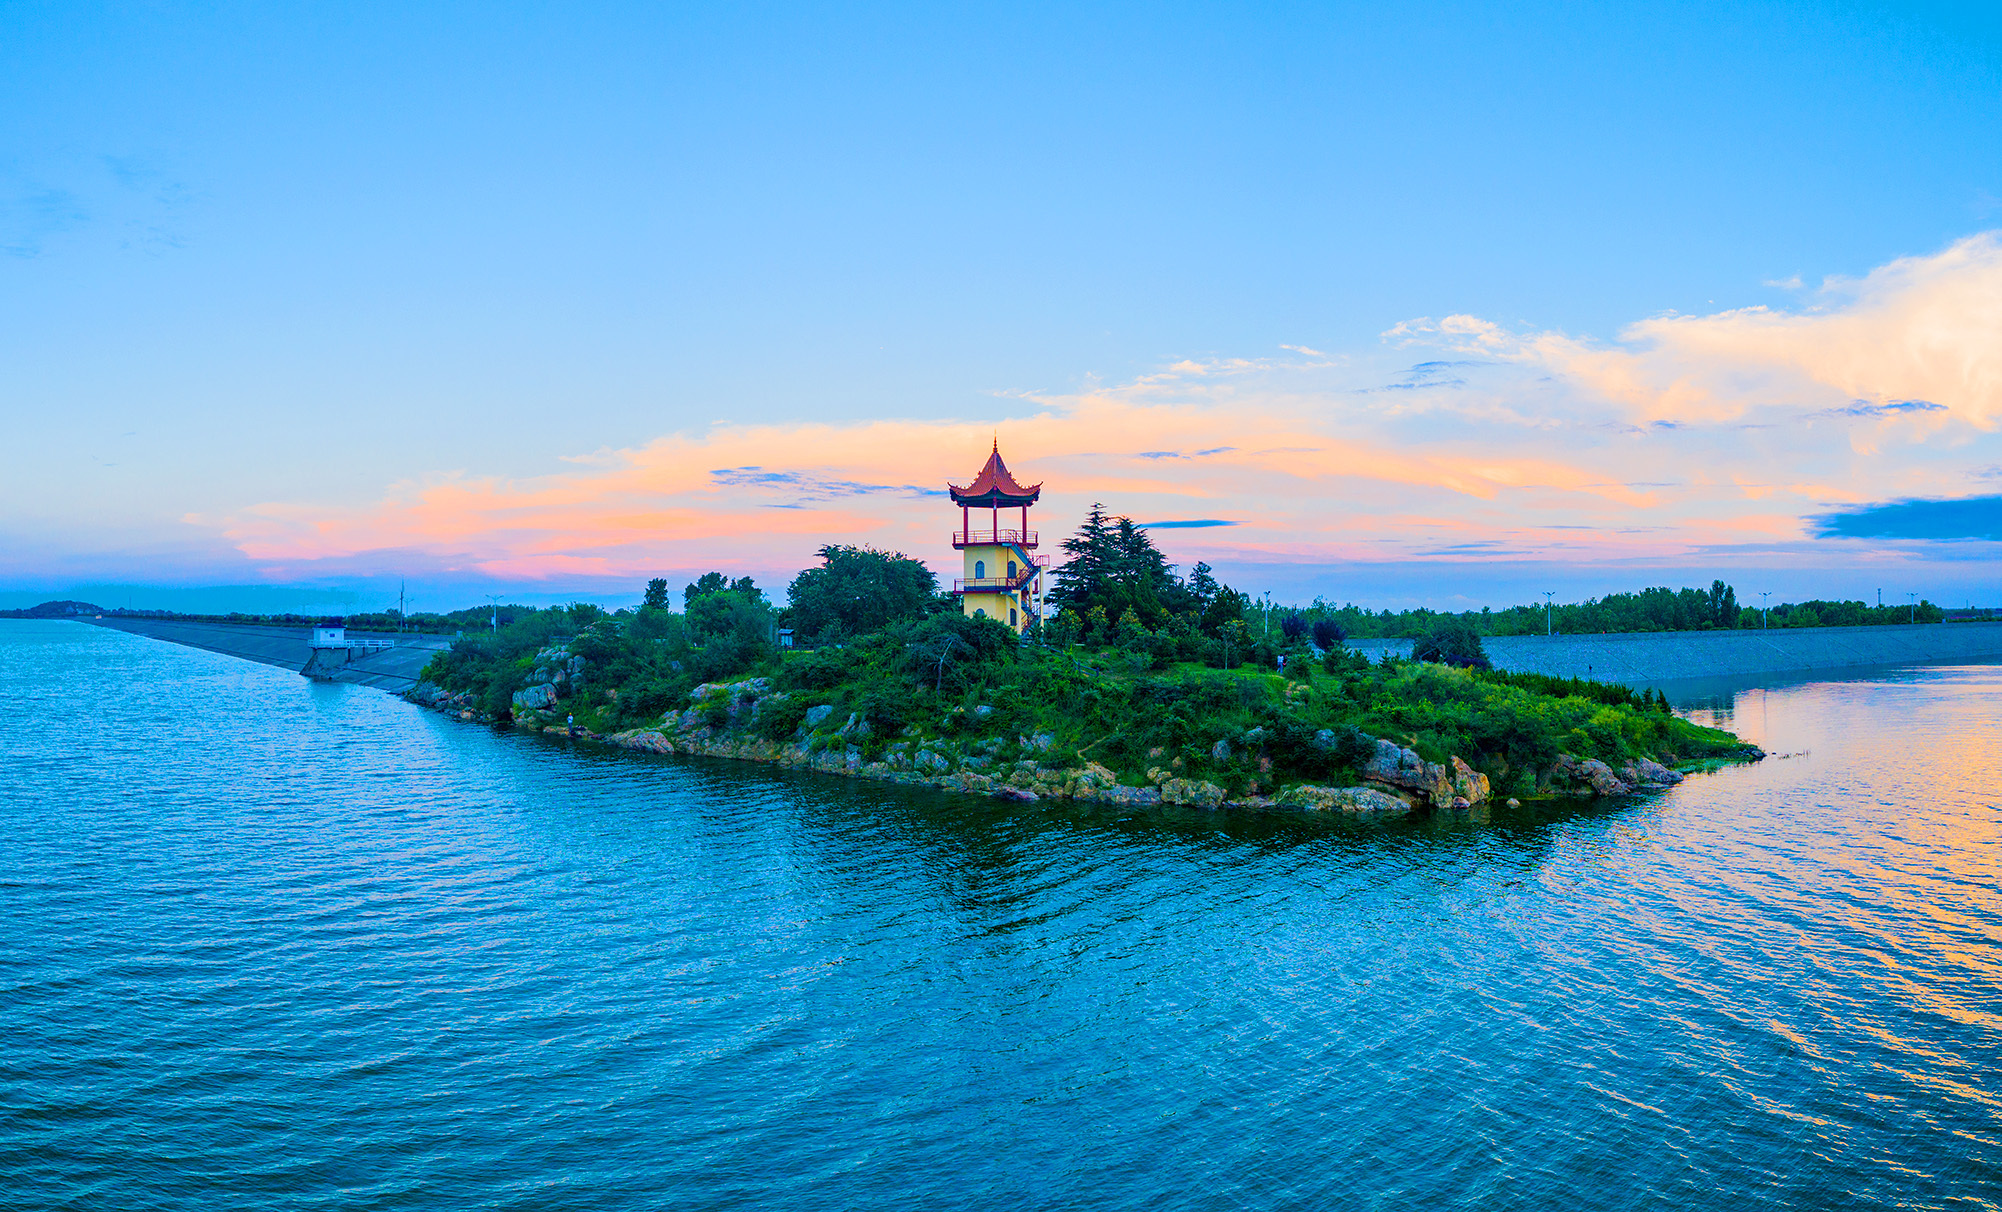  塔山湖位于江苏省连云港市赣榆区塔山镇境内,是国家级水利风景区